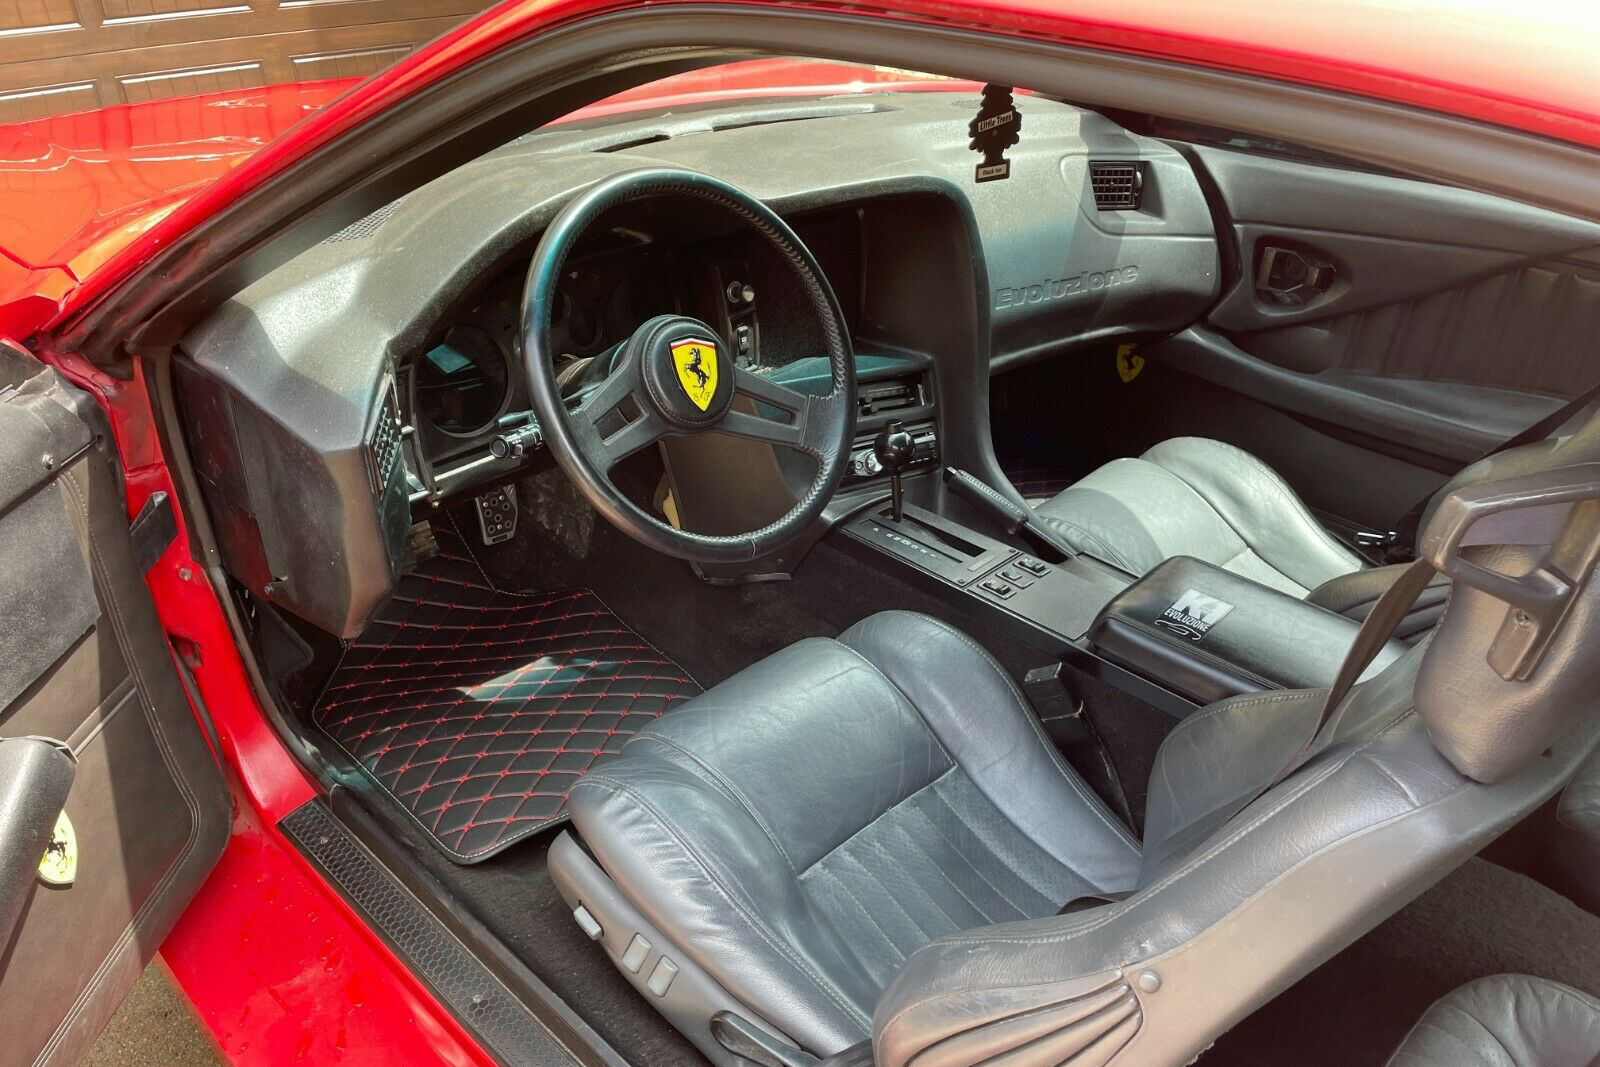 Porta do motorista da Ferrari com Chevrolet Camaro 85 vermelho